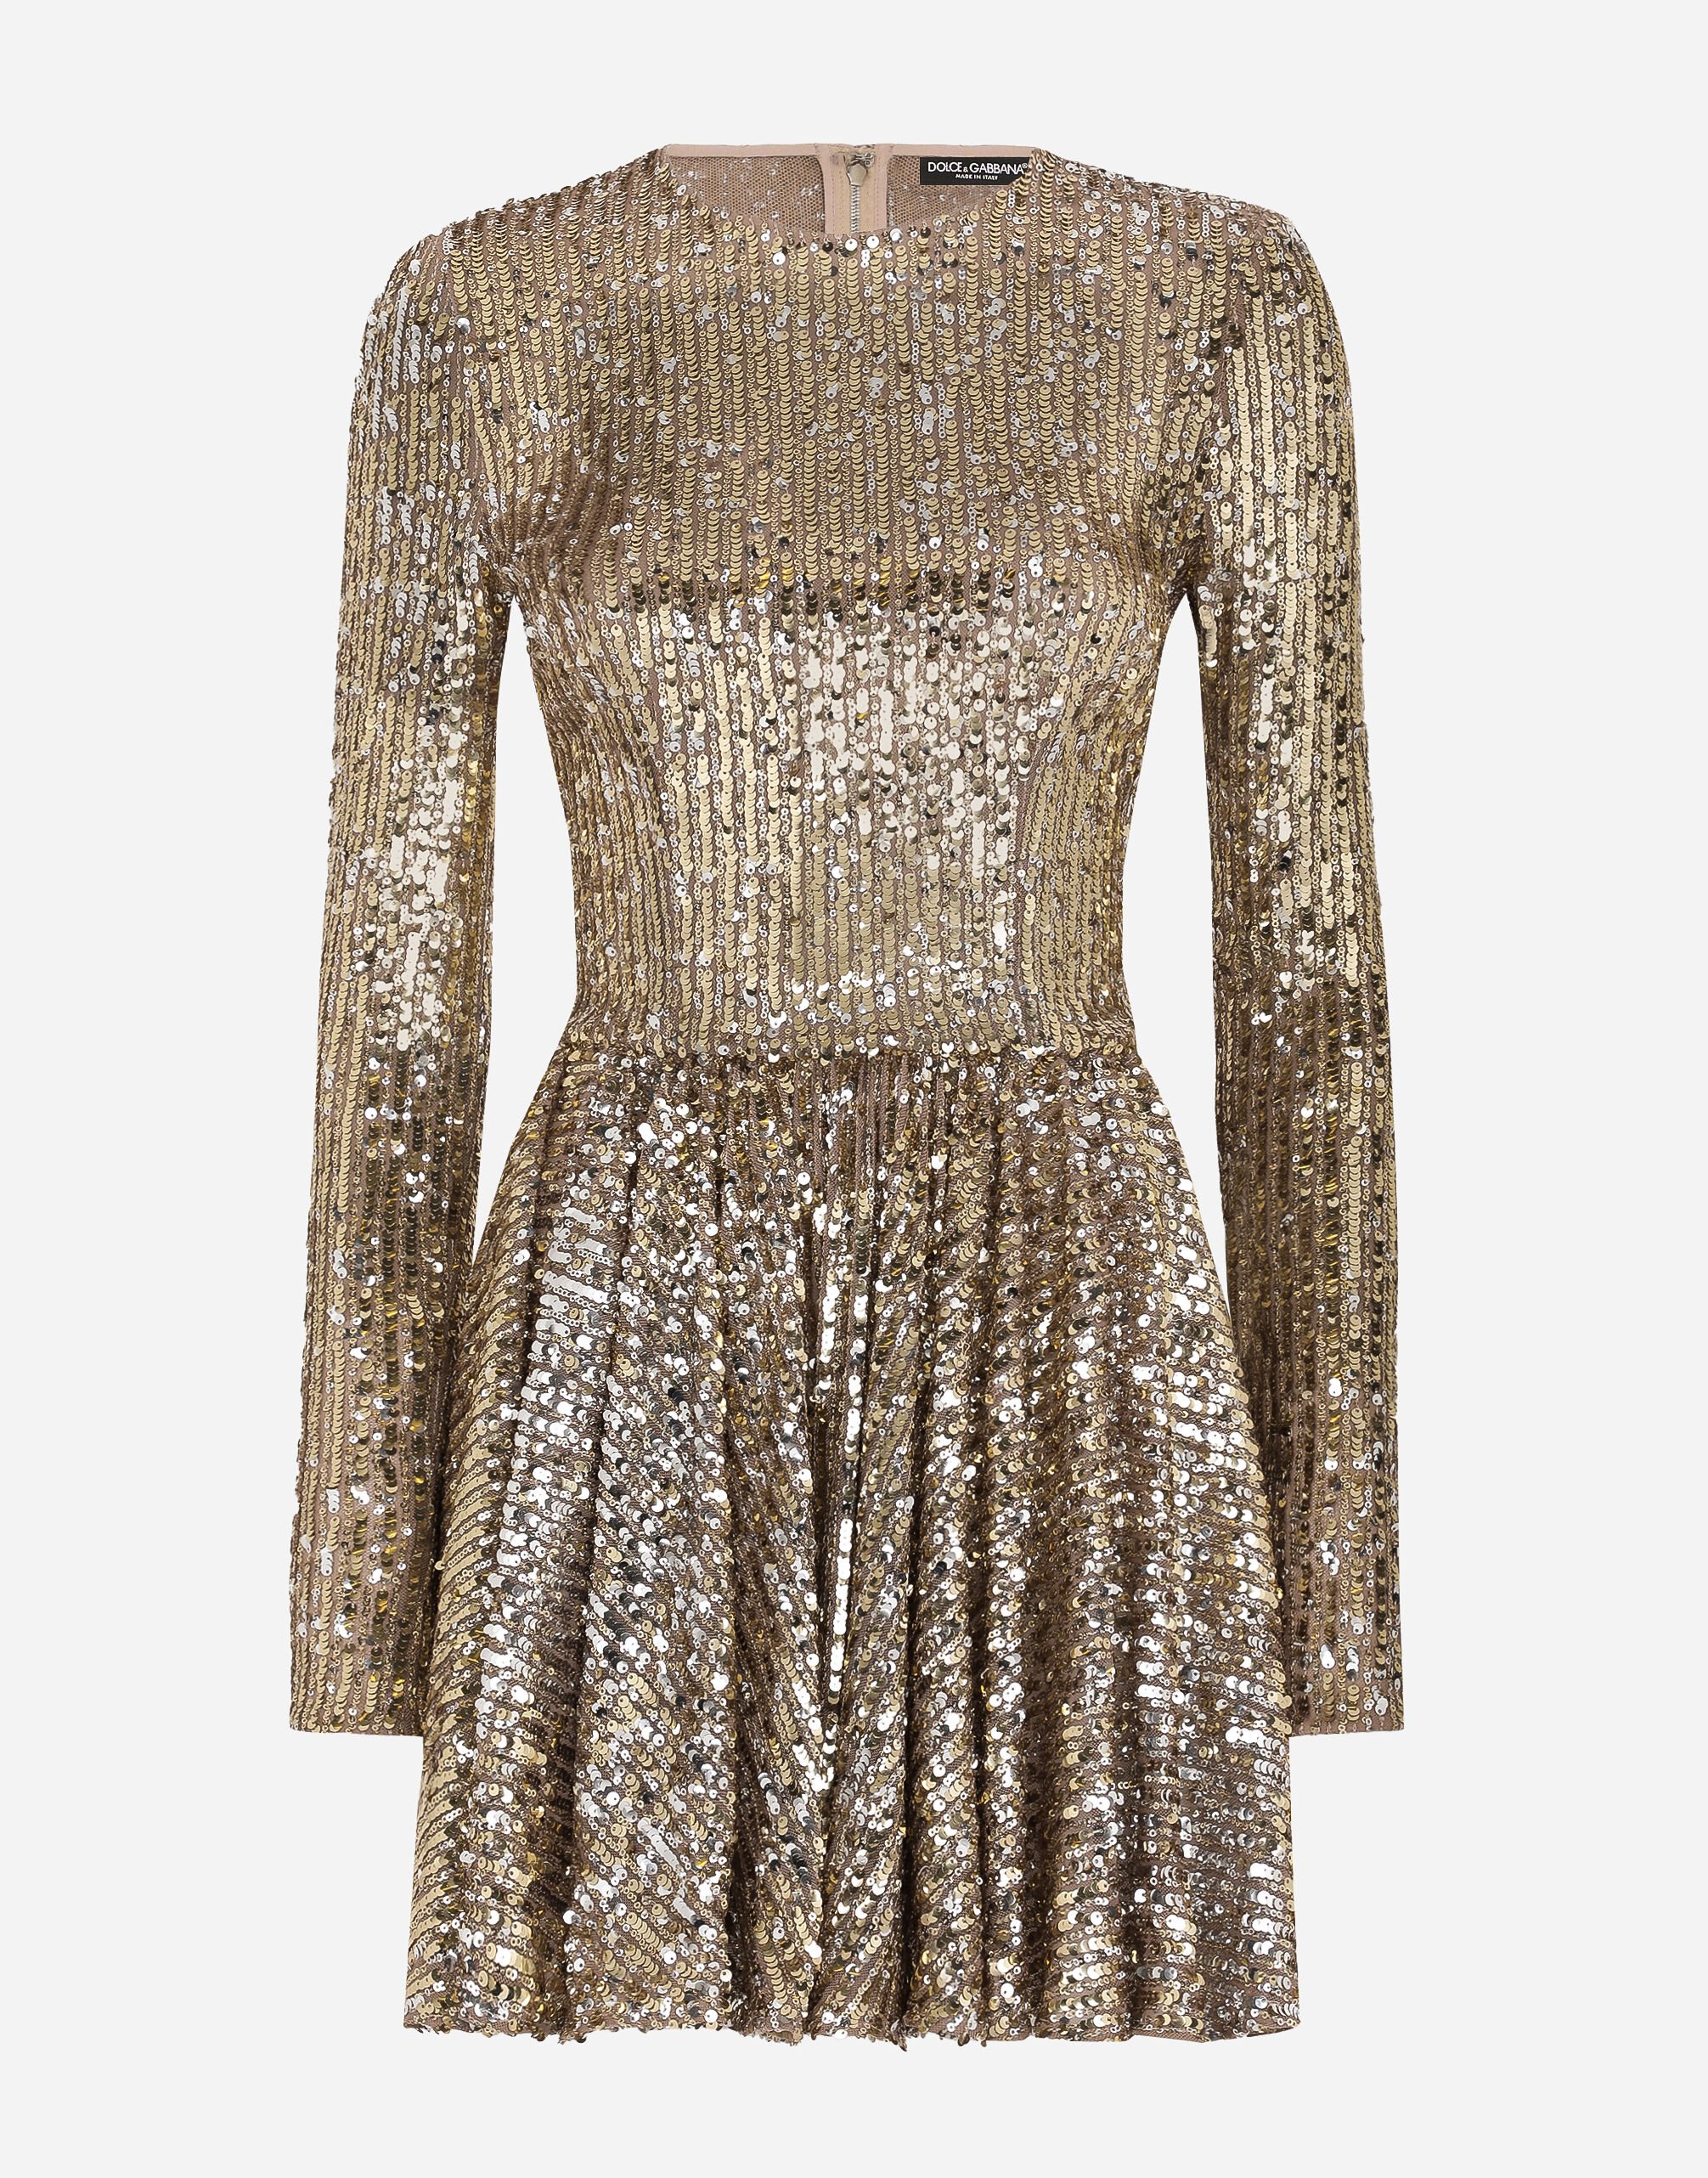 Dolce & Gabbana Short sequined dress with circle skirt Gold F6DFCTFLMII